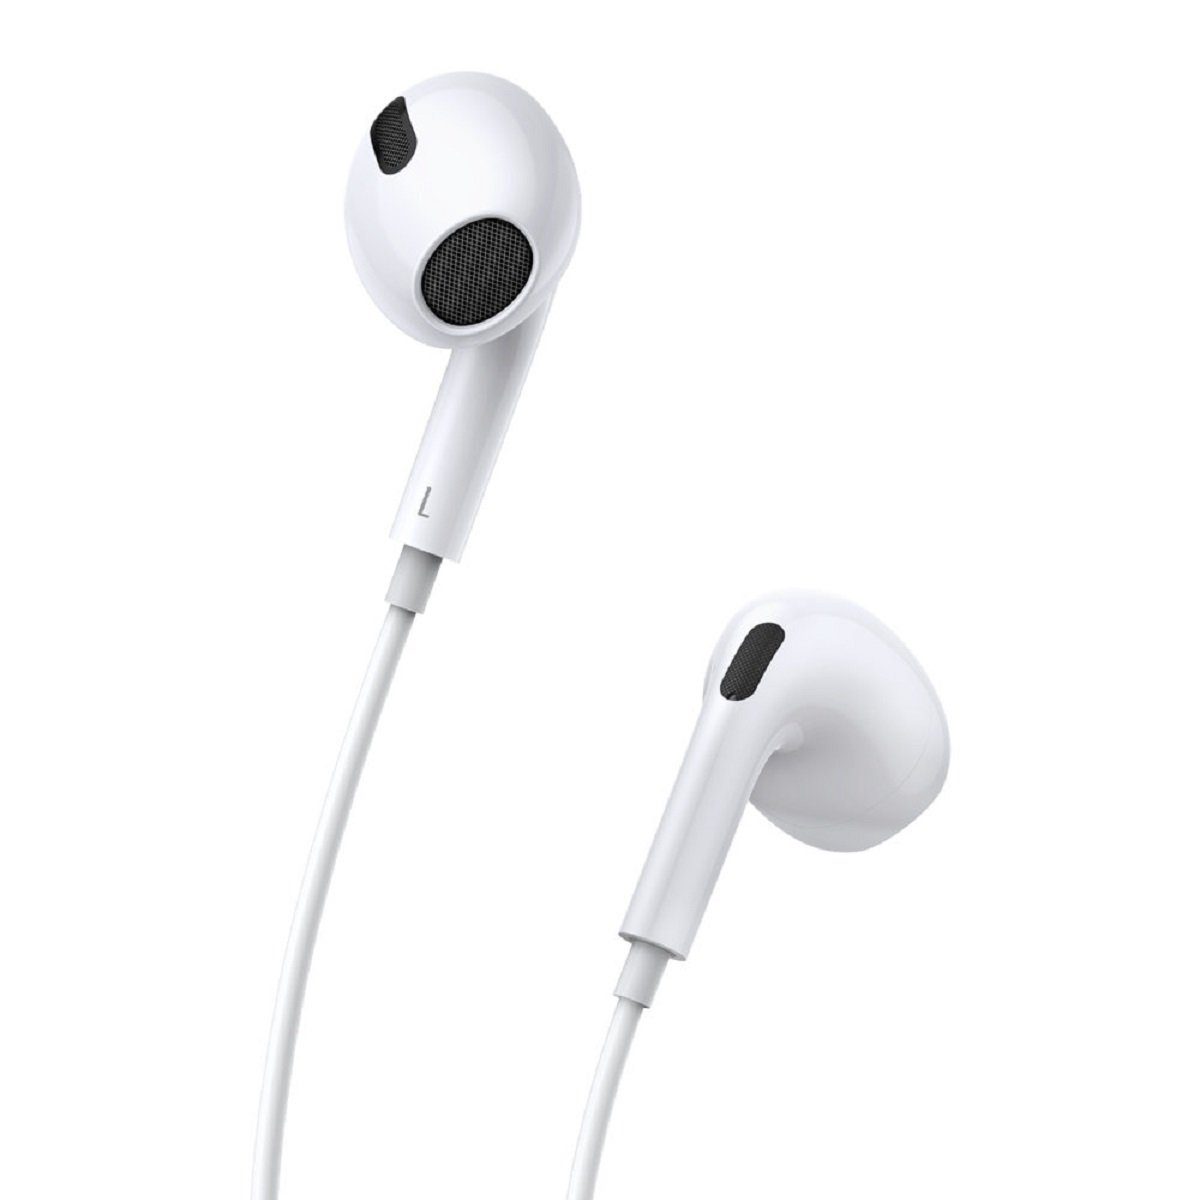 Baseus encok c17 kabelgebundener m, Kompatibilität: mit USB-Typ-C-Mikrofon Steuerung und weiß, (Kabelgebunden, mit In-Ear-Kopfhörer Musik, 1,1 integrierte USB-Typ-C-Mikrofon In-Ear-Kopfhörer, Anrfe Design) mit für / Kopfhörer ergonomischem iOS, Android Kabellänge